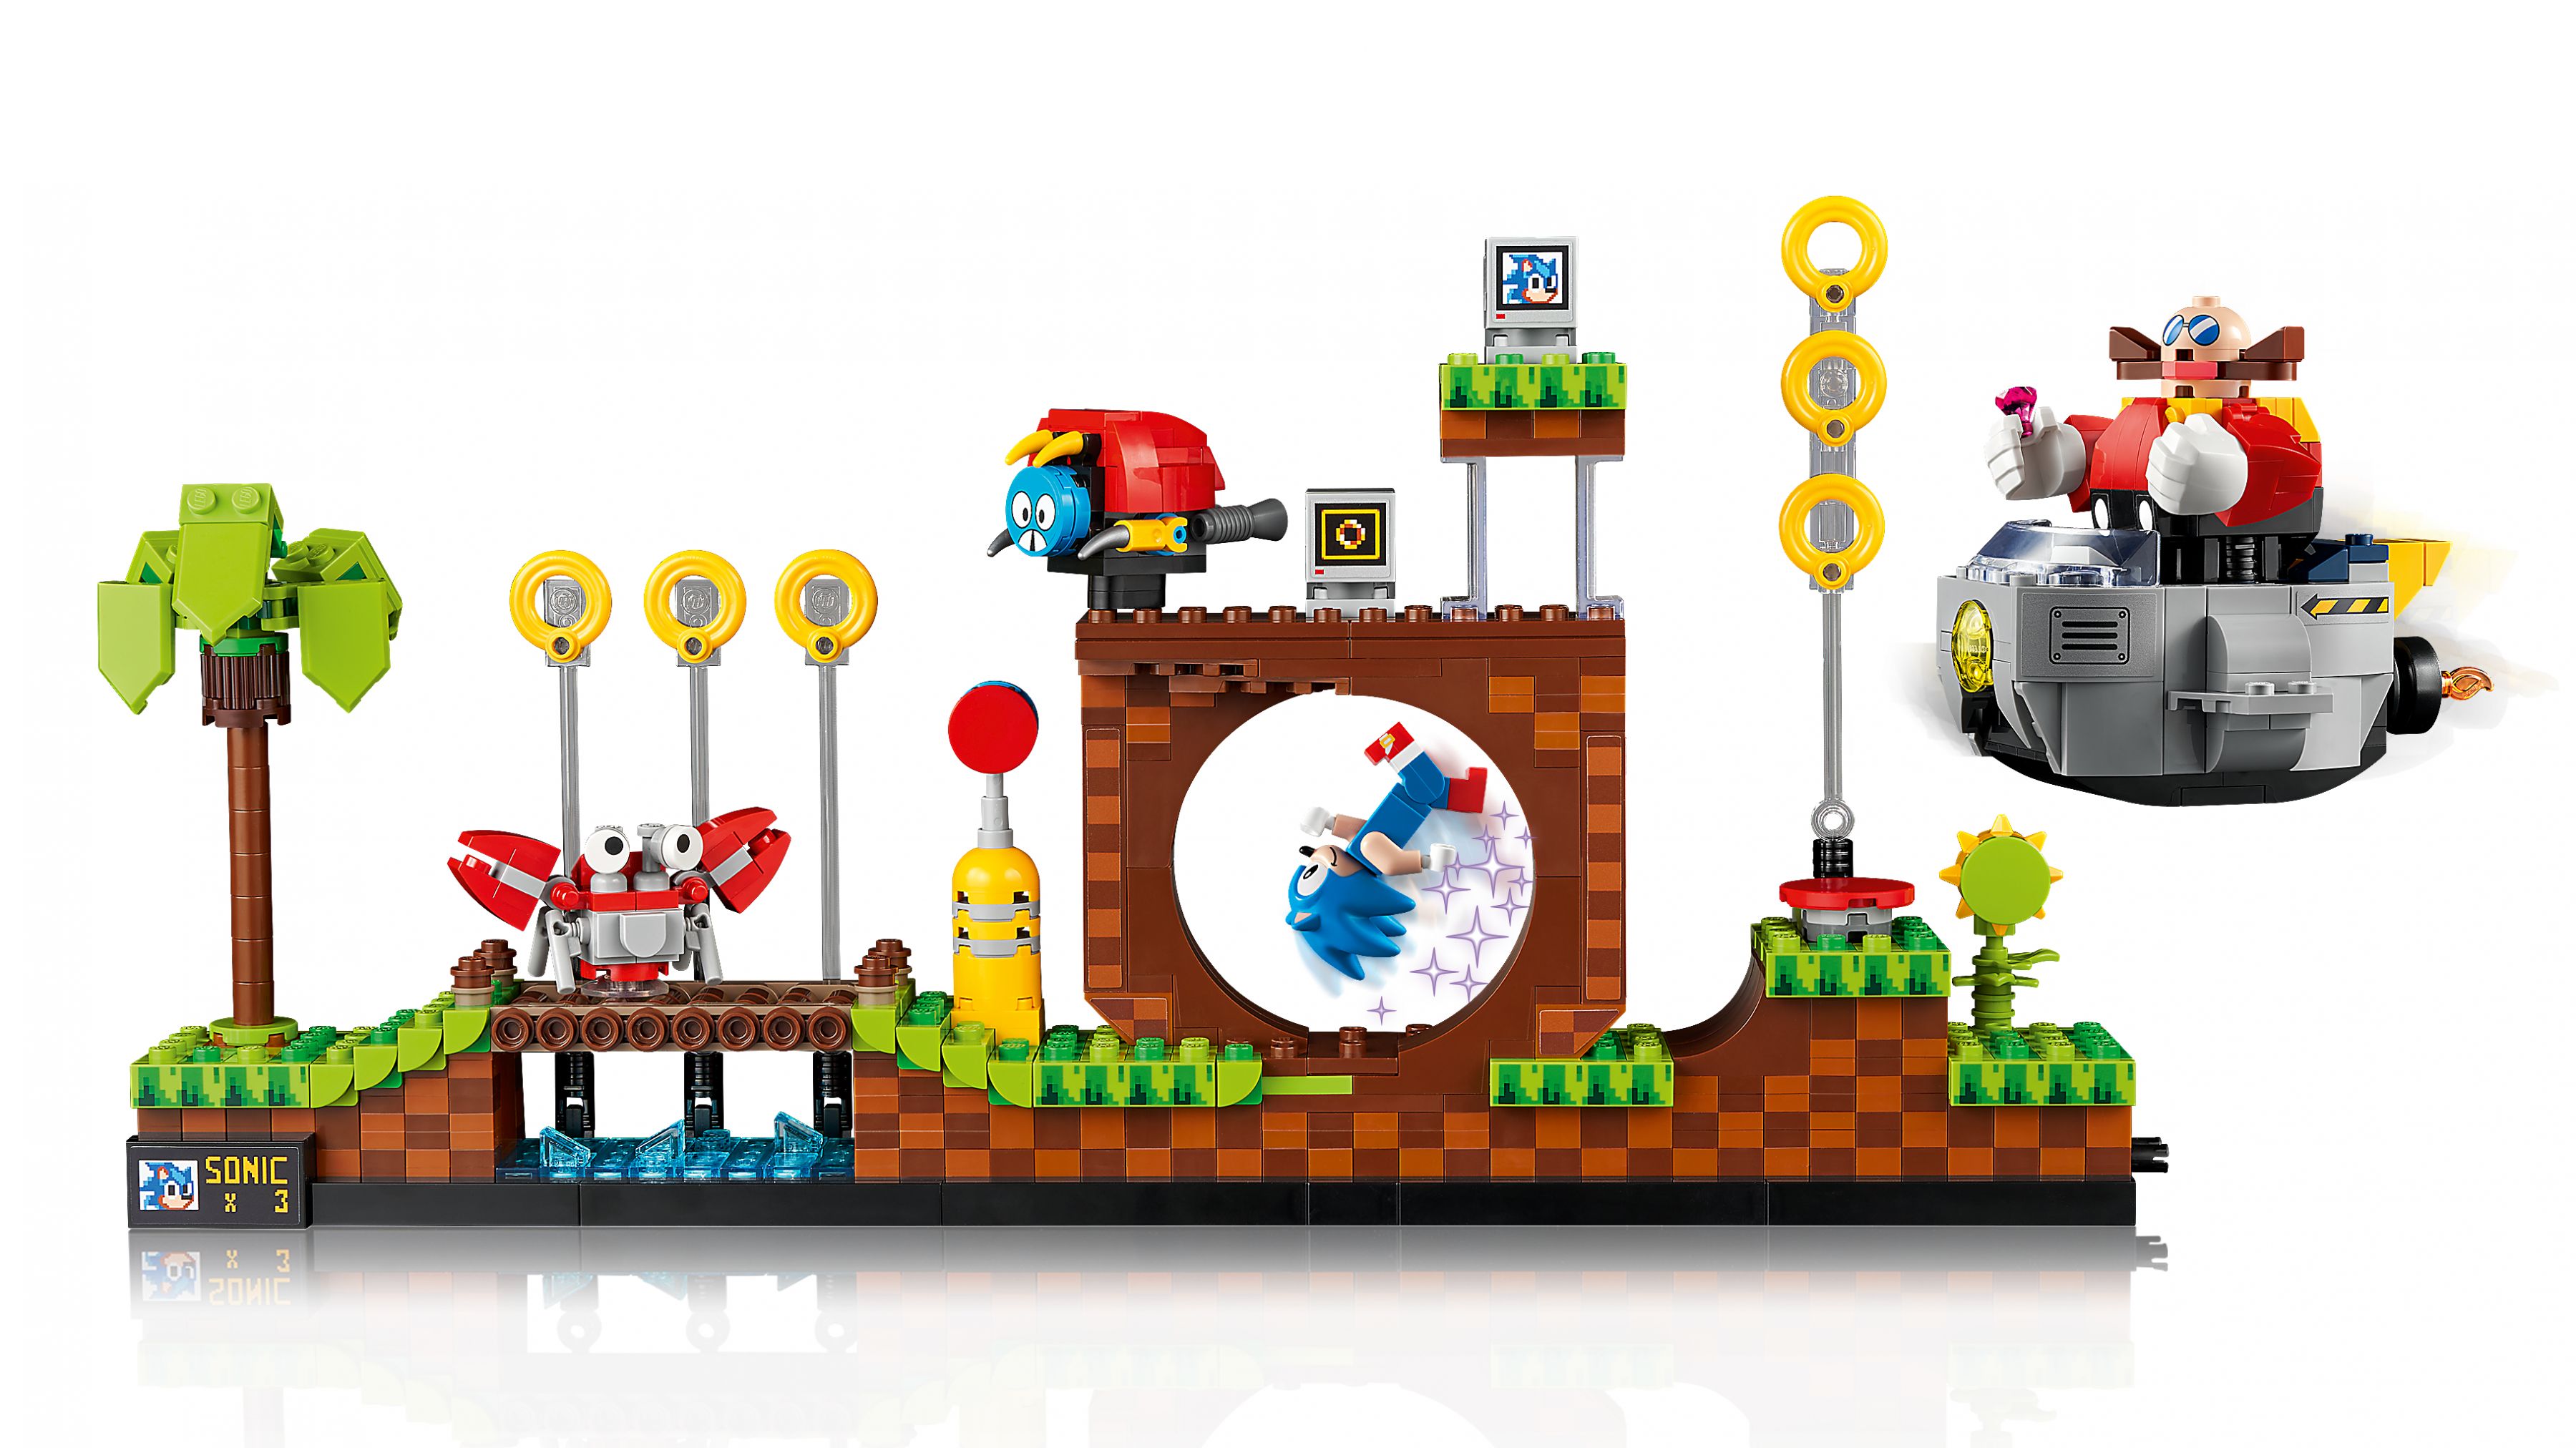 LEGO Ideas 21331 Sonic the Hedgehog™ – Green Hill Zone LEGO_21331_web_sec02_nobg.jpg